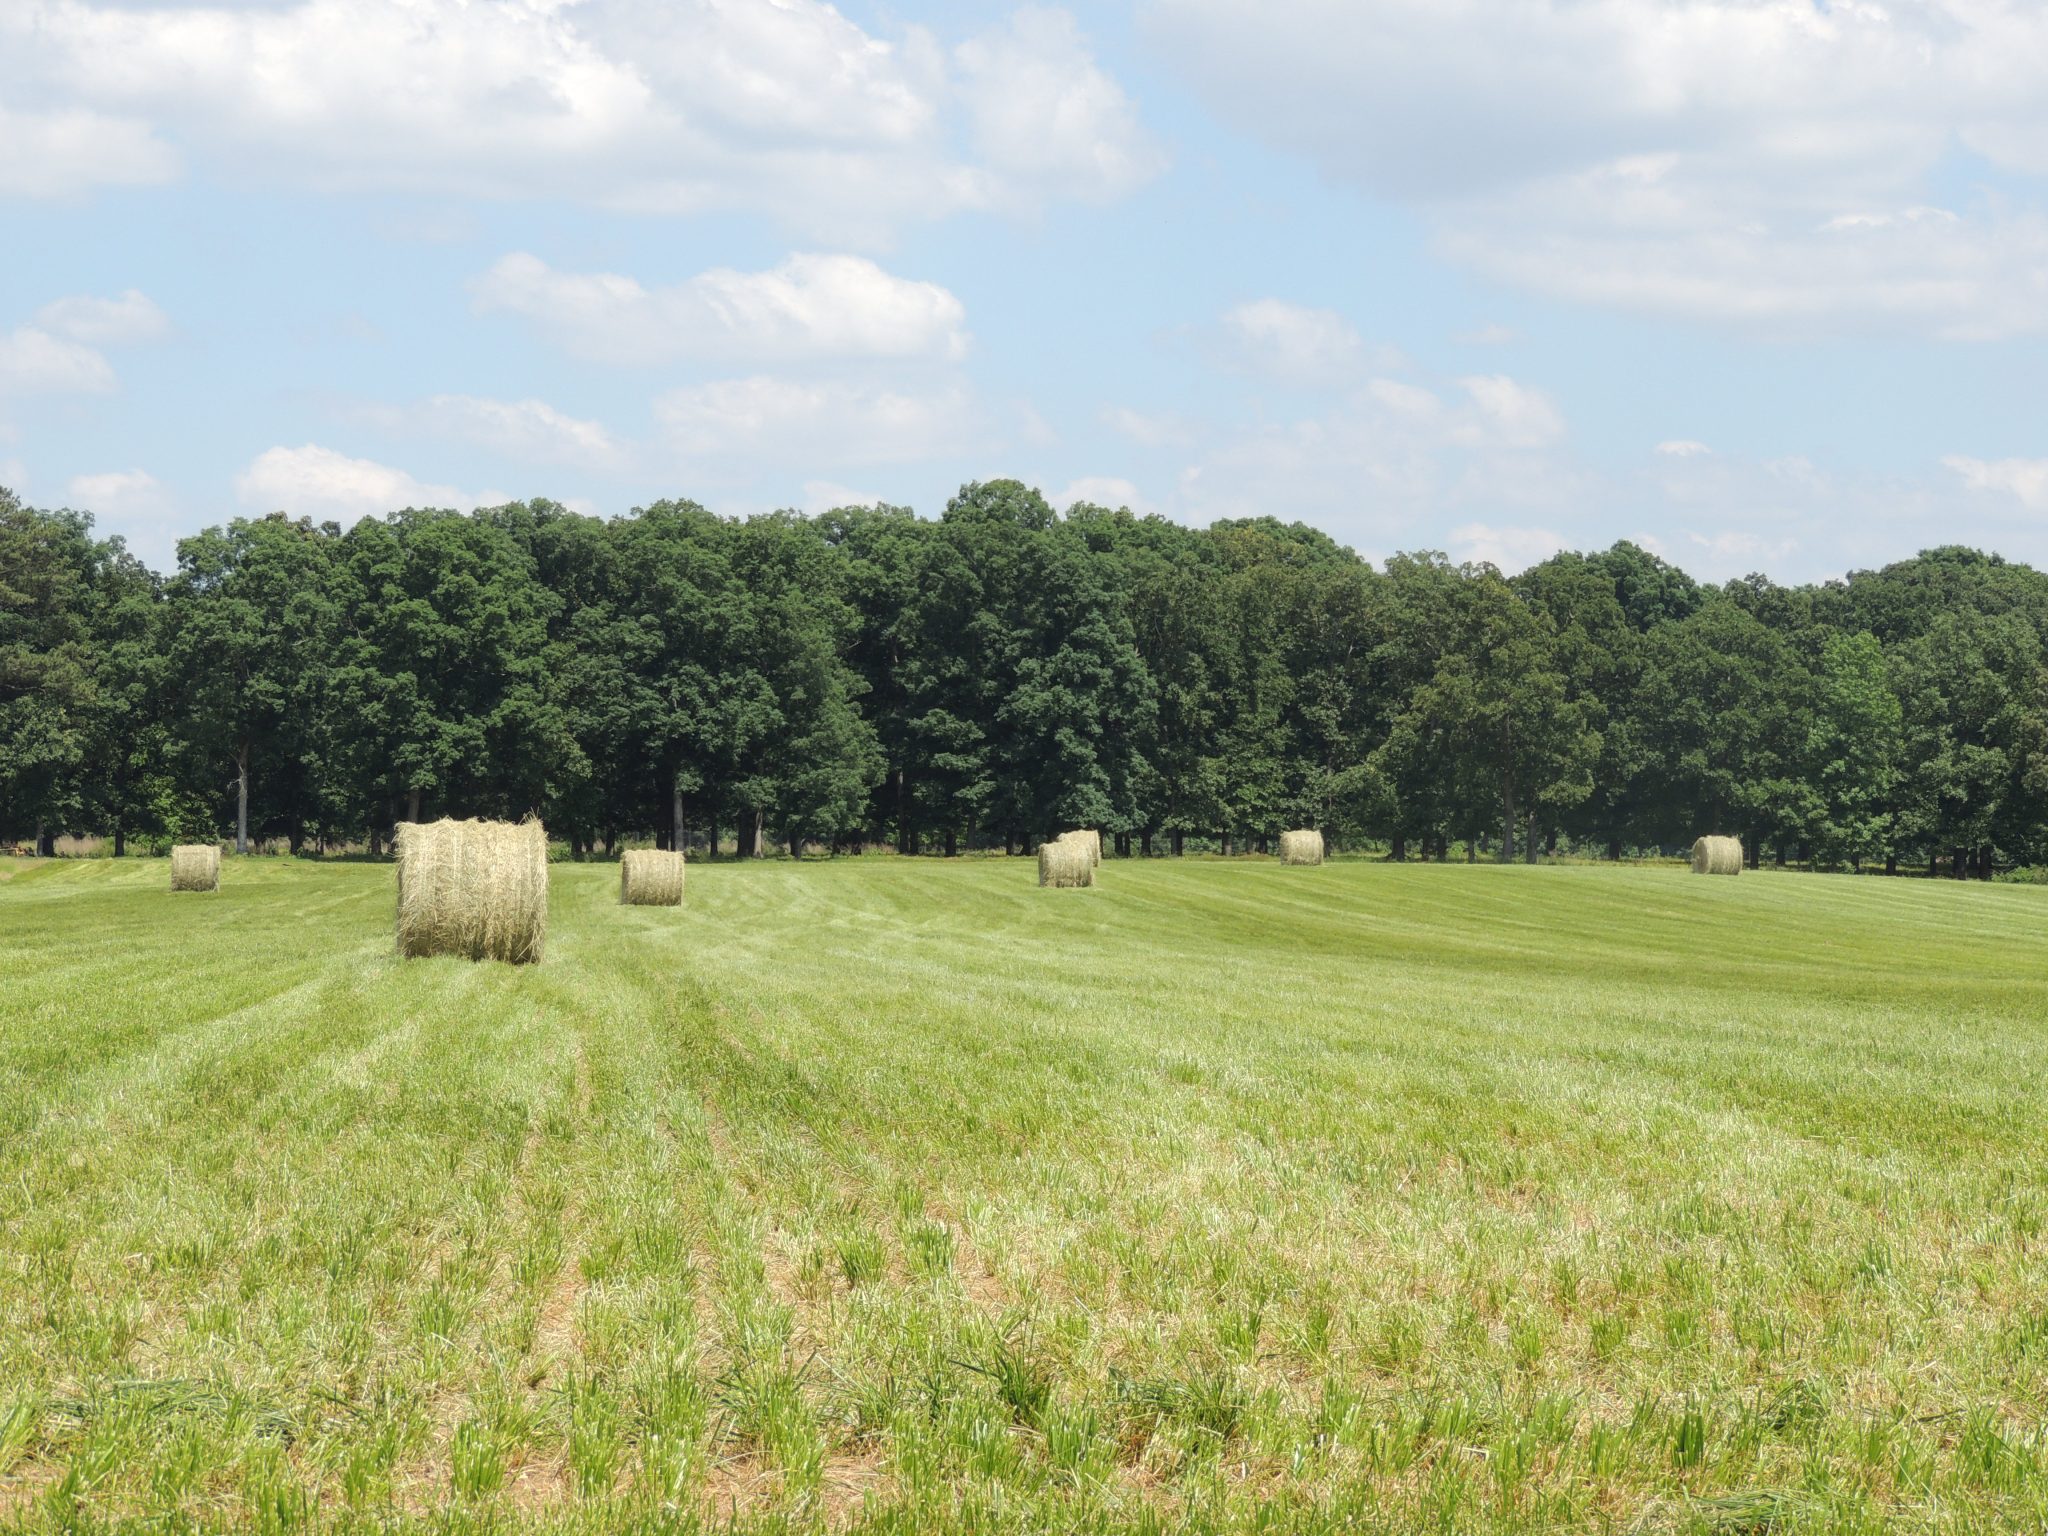 Hay sitting in a field